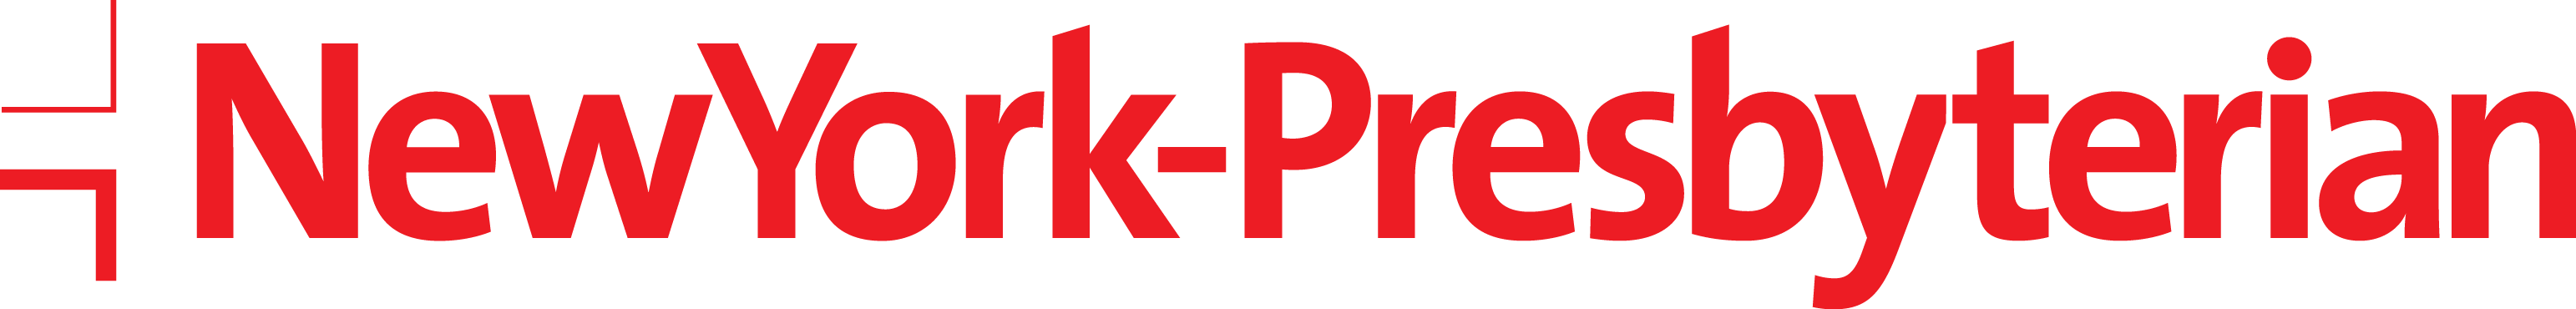 nyp-logo